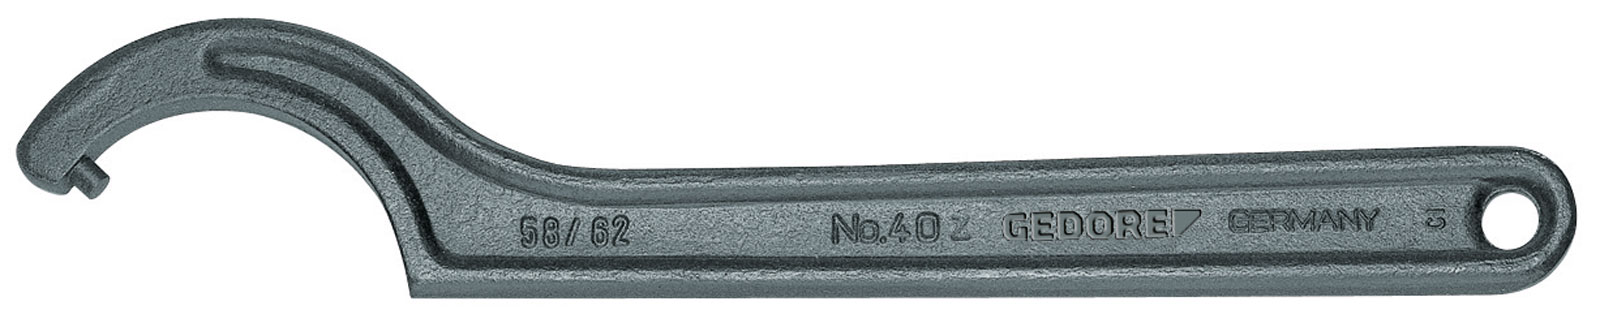 Bild von 40 Z 110-115 Hakenschlüssel, DIN 1810 Form B, 110-115 mm